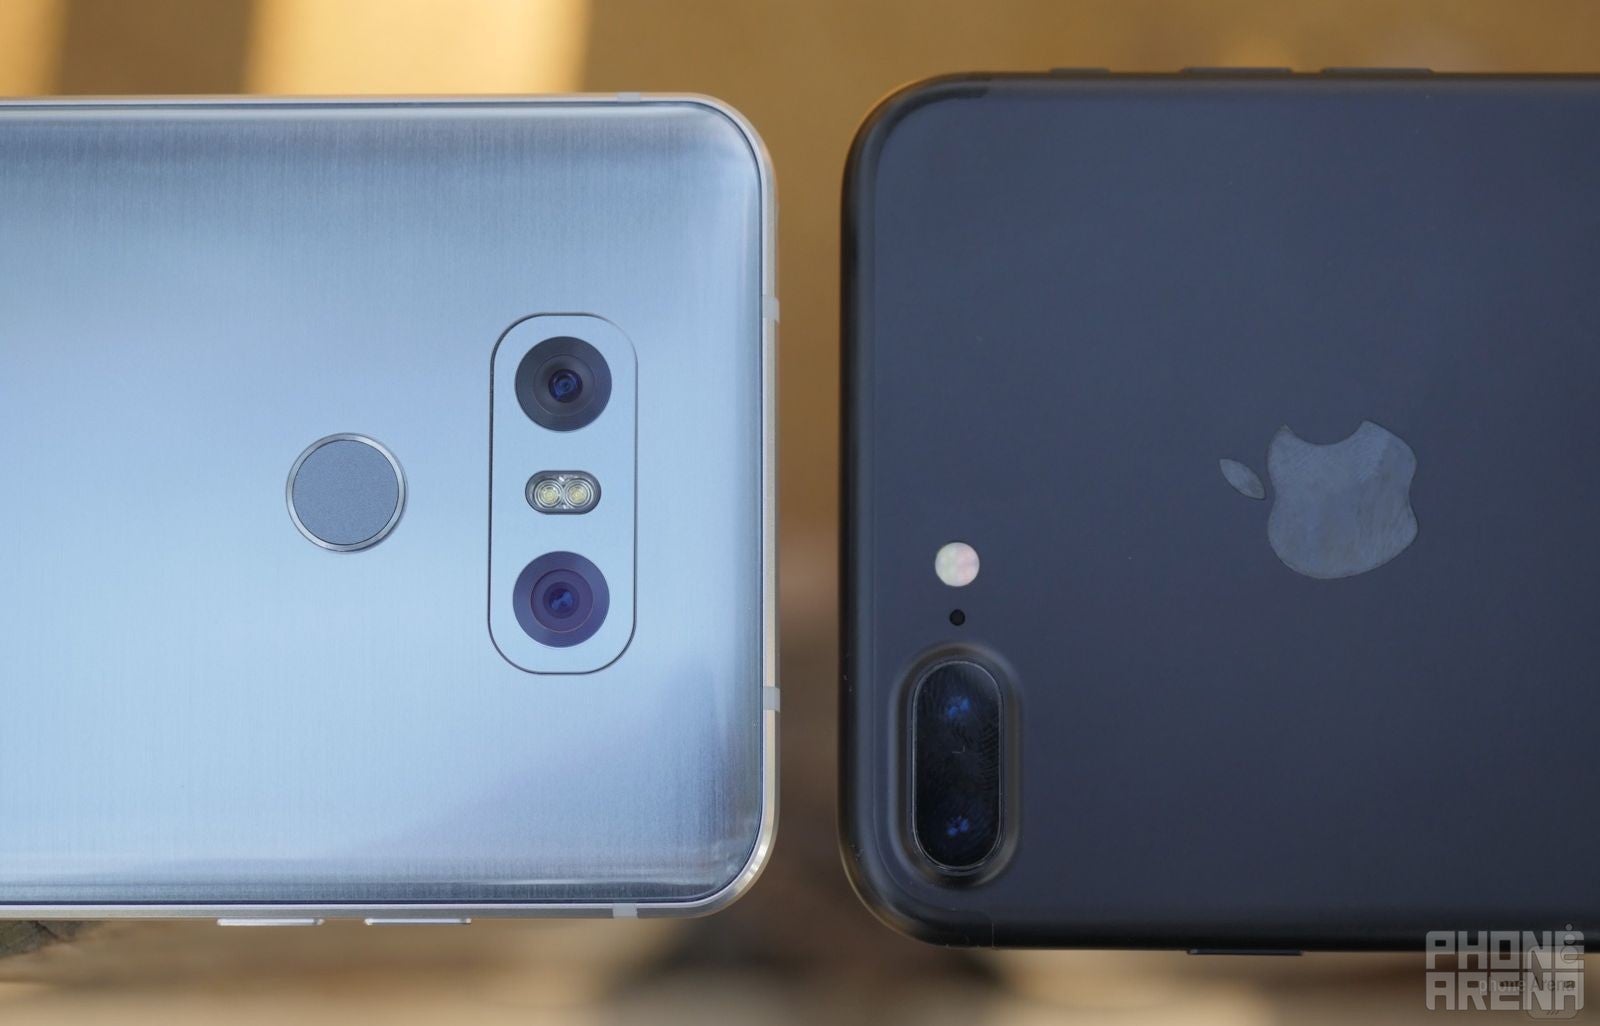 LG G6 vs iPhone 7 Plus: Bezel-less vs Bezel-ful